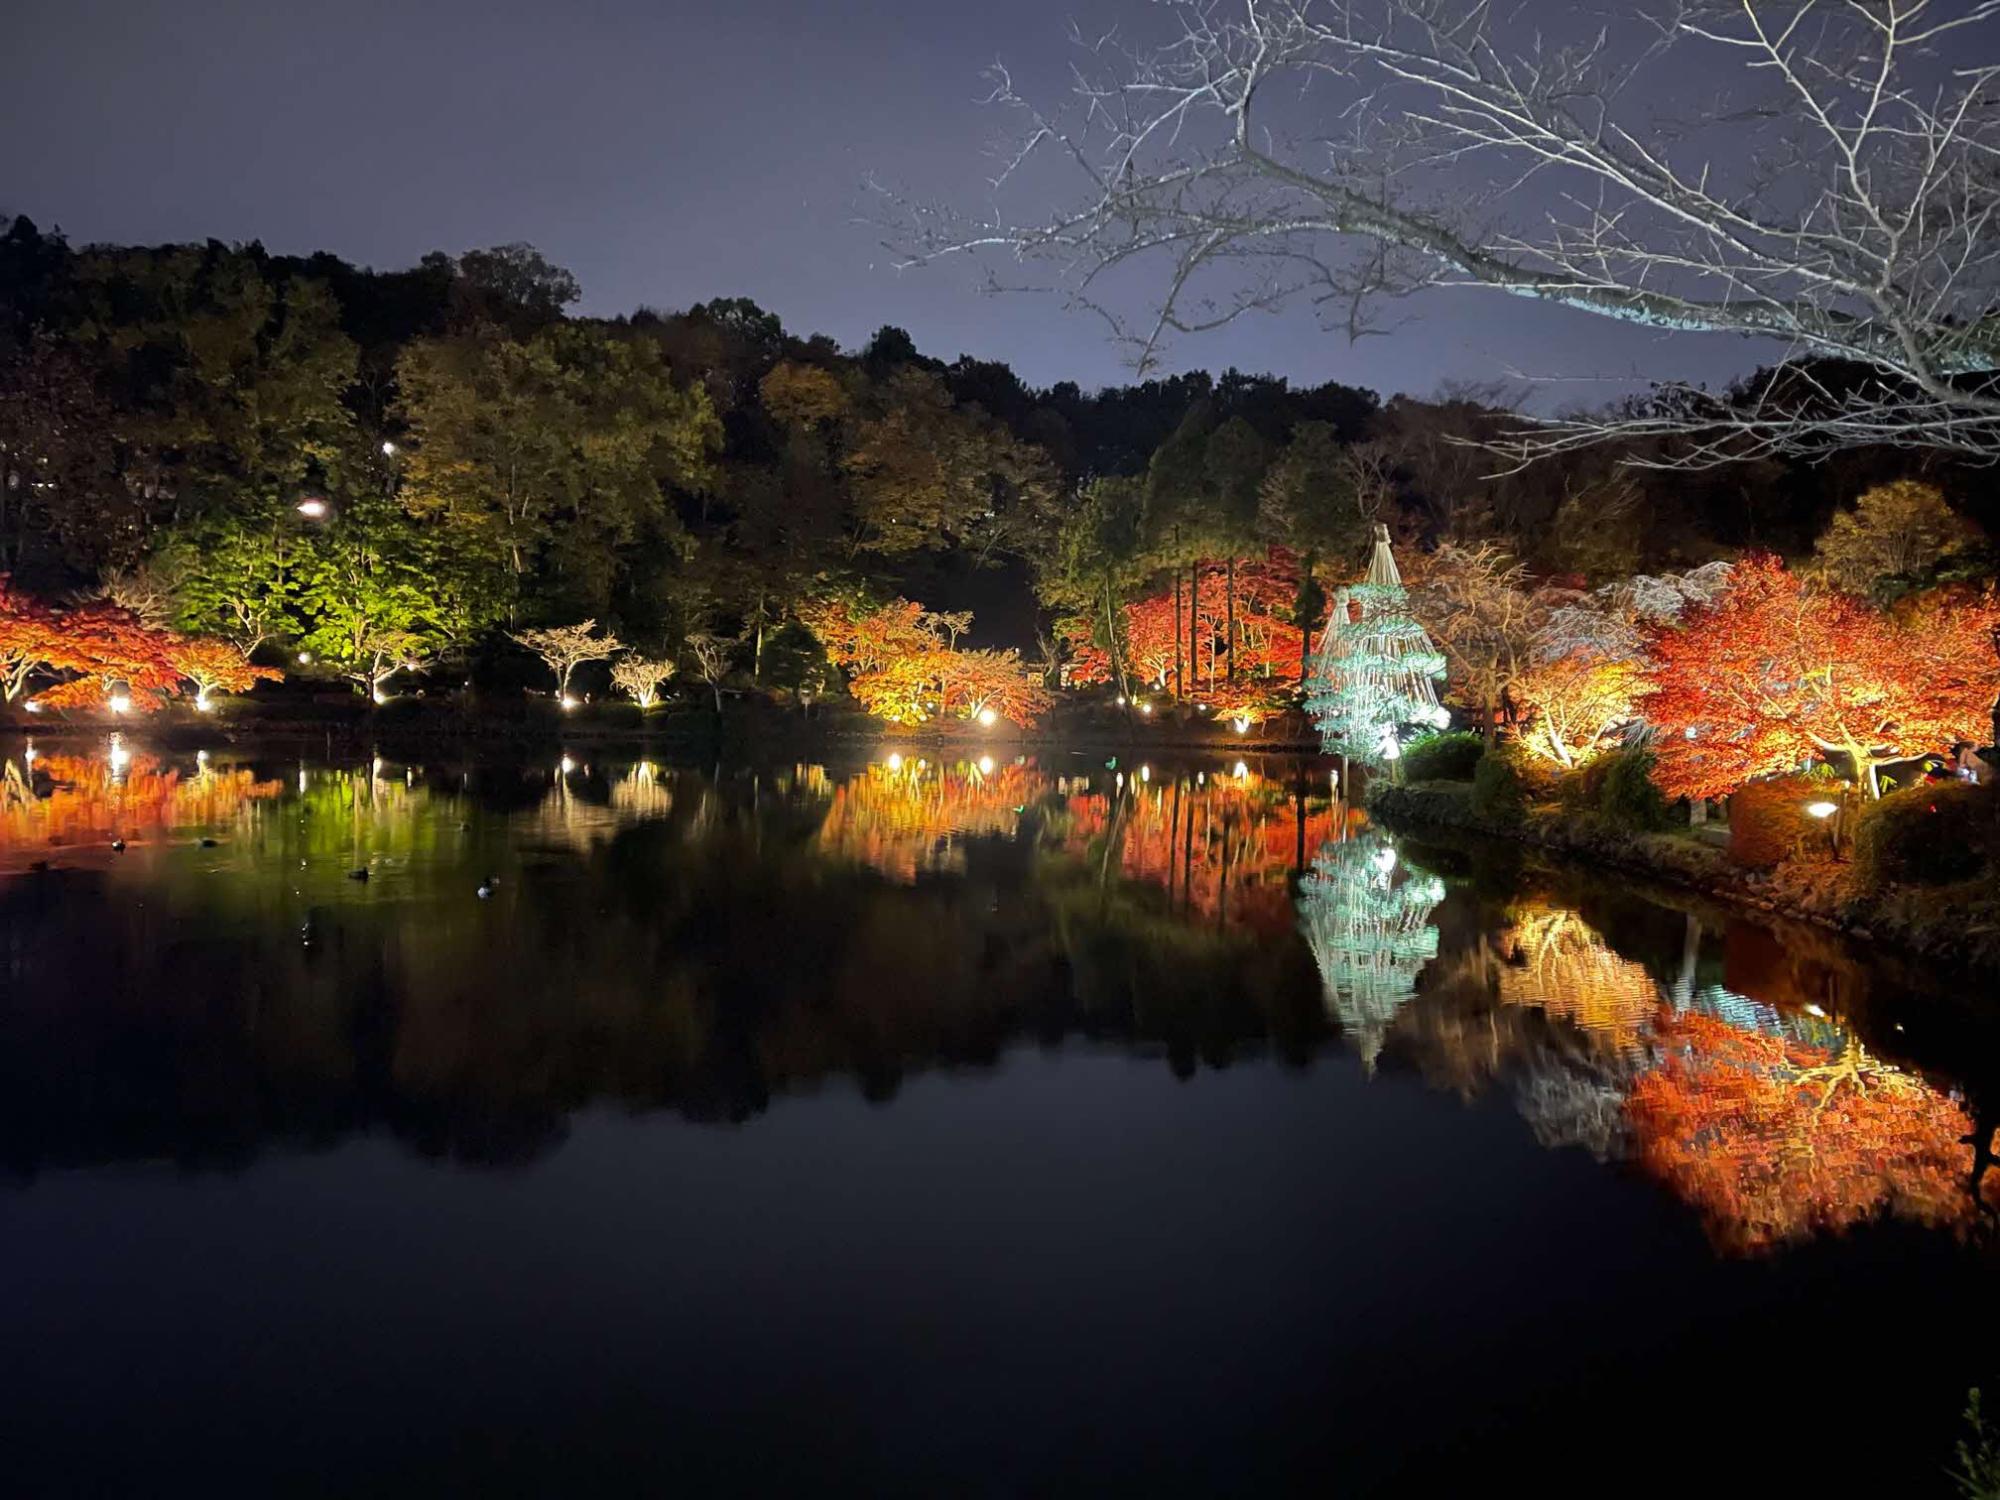 暗闇の中でライトアップされた紅葉の木々が池に写っている様子